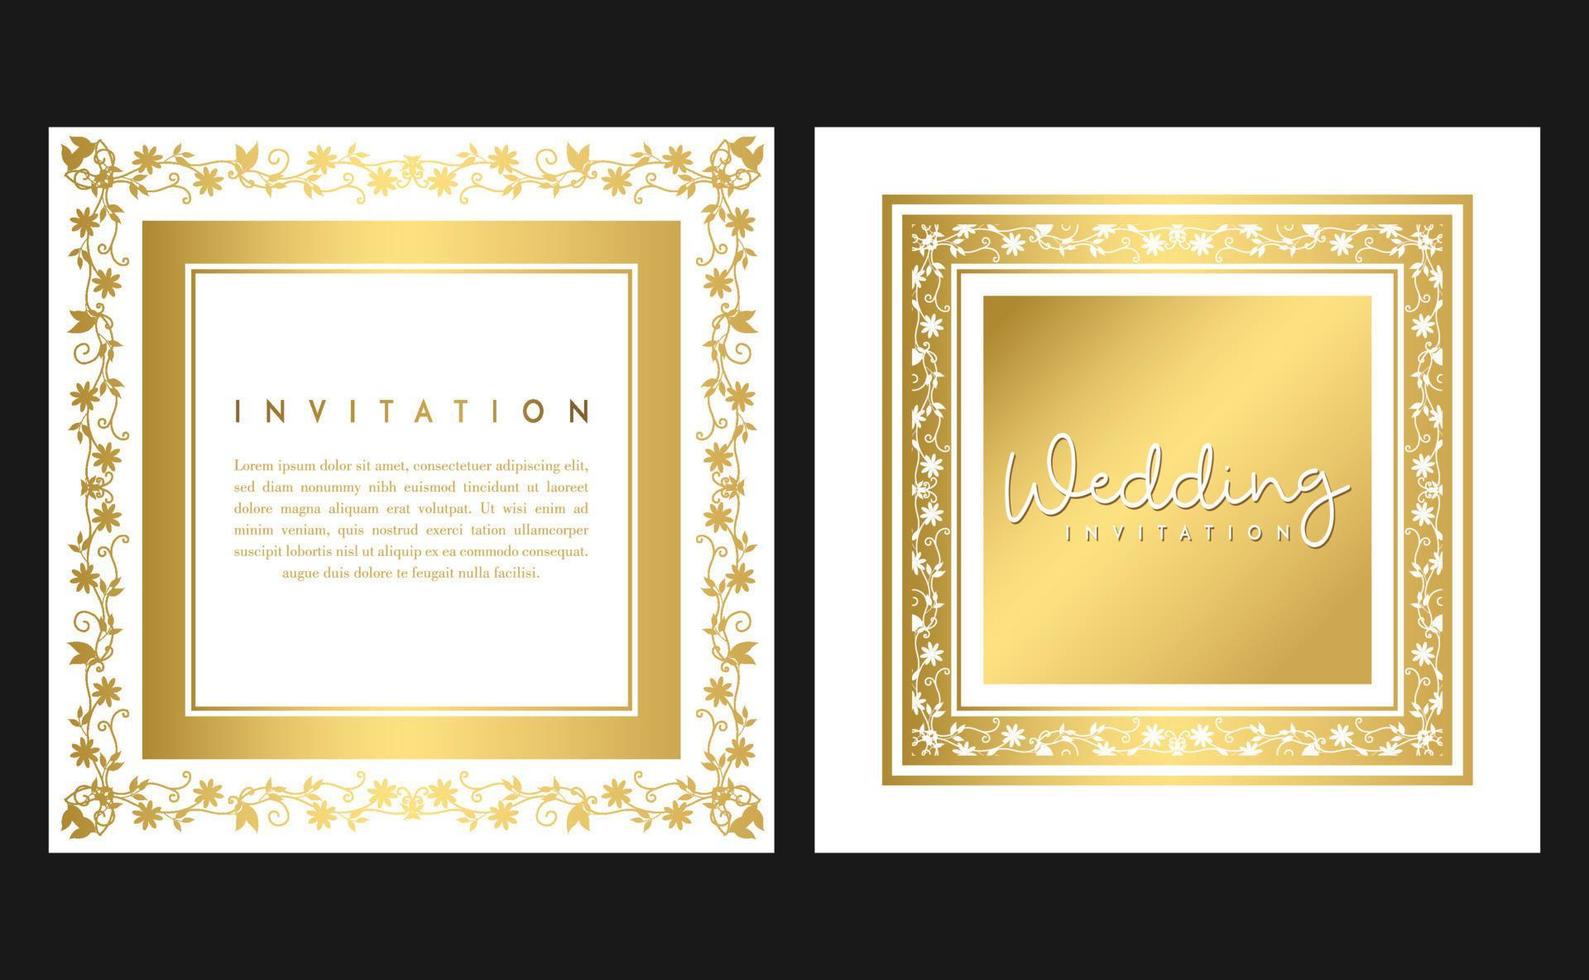 carte d'invitation de mariage d'or. carte d'invitation avec concept de luxe, maquettes dorées. vecteur